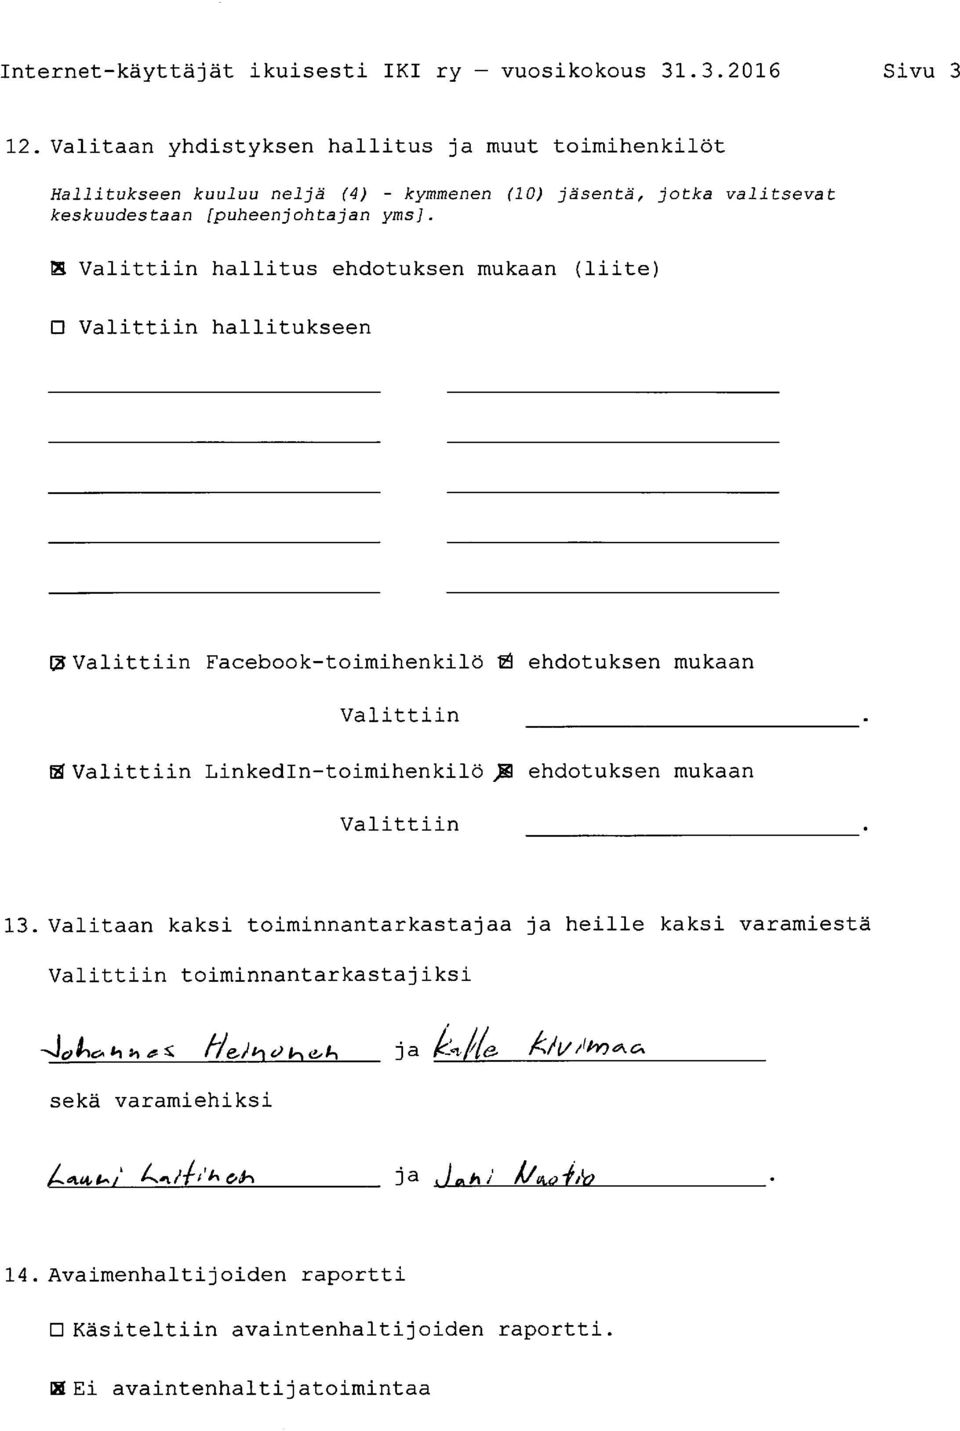 S Valittiin hallitus ehdotuksen mukaan (liite) Valittiin hallitukseen 0 Valittiin Facebooktoimihenkilö Ö ehdotuksen mukaan Valittiin.